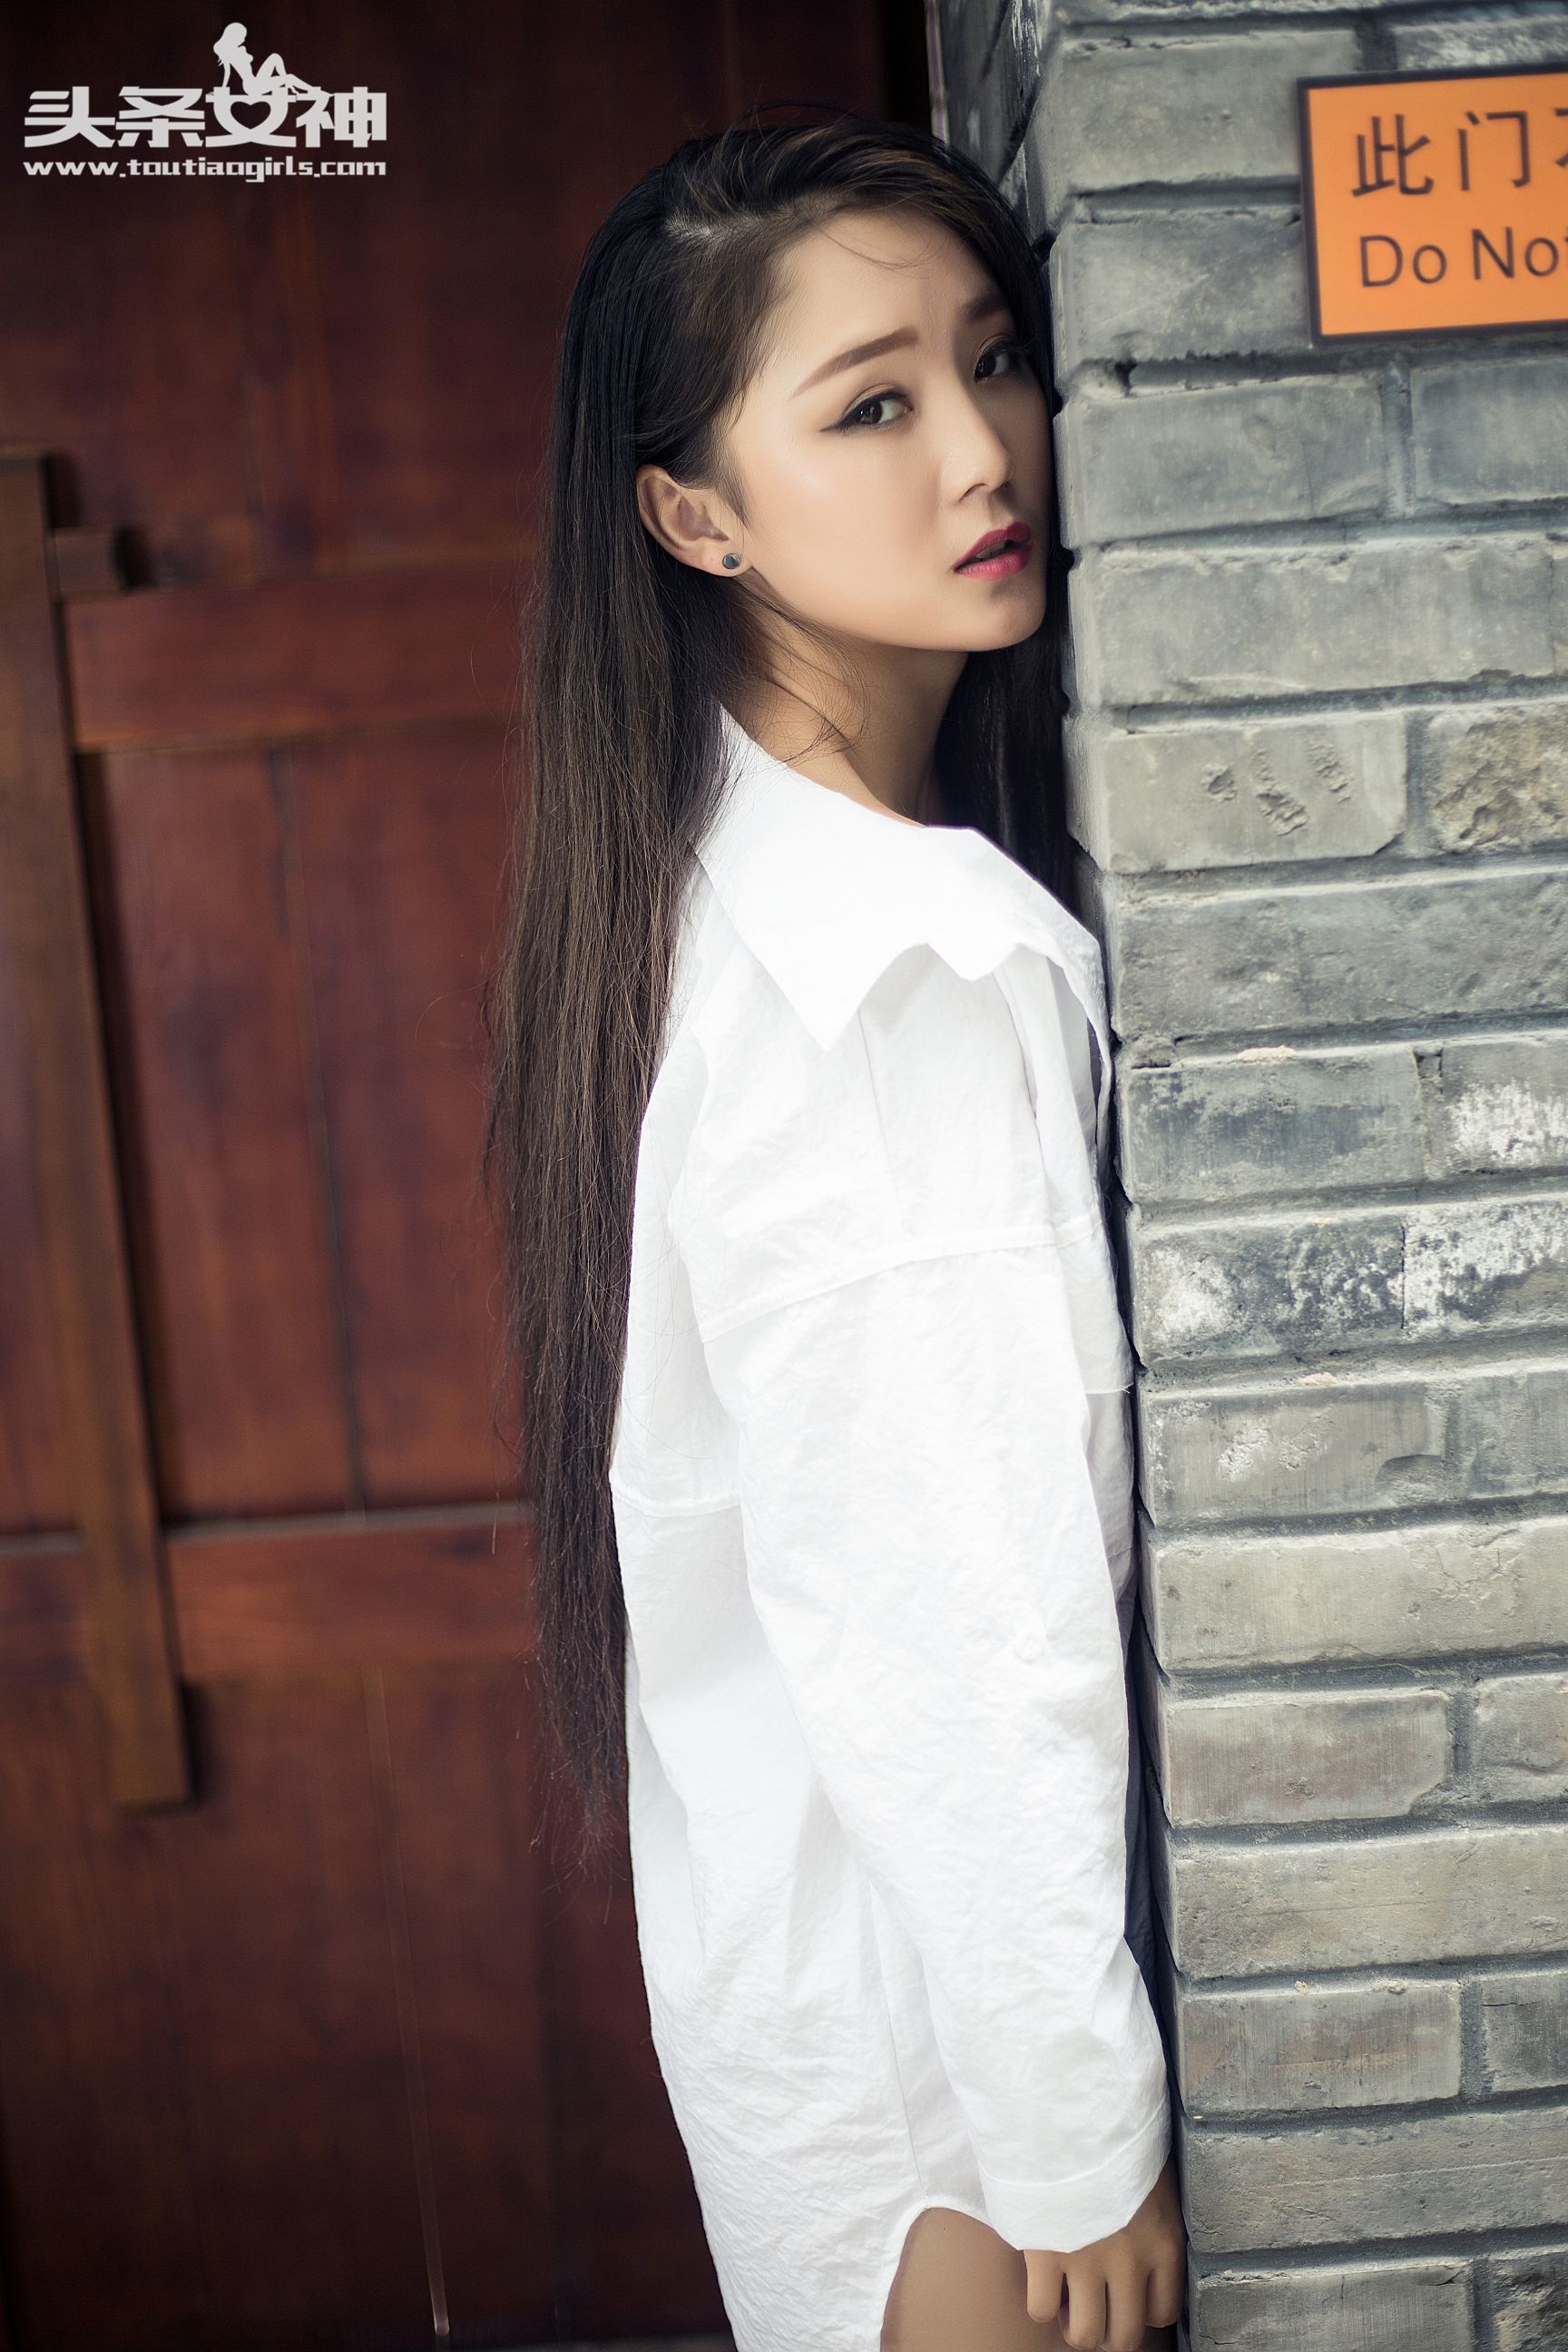 Zhang Xiaoya/Xiaoya “Pure White Shirt” [Headline Goddess] Photo Album